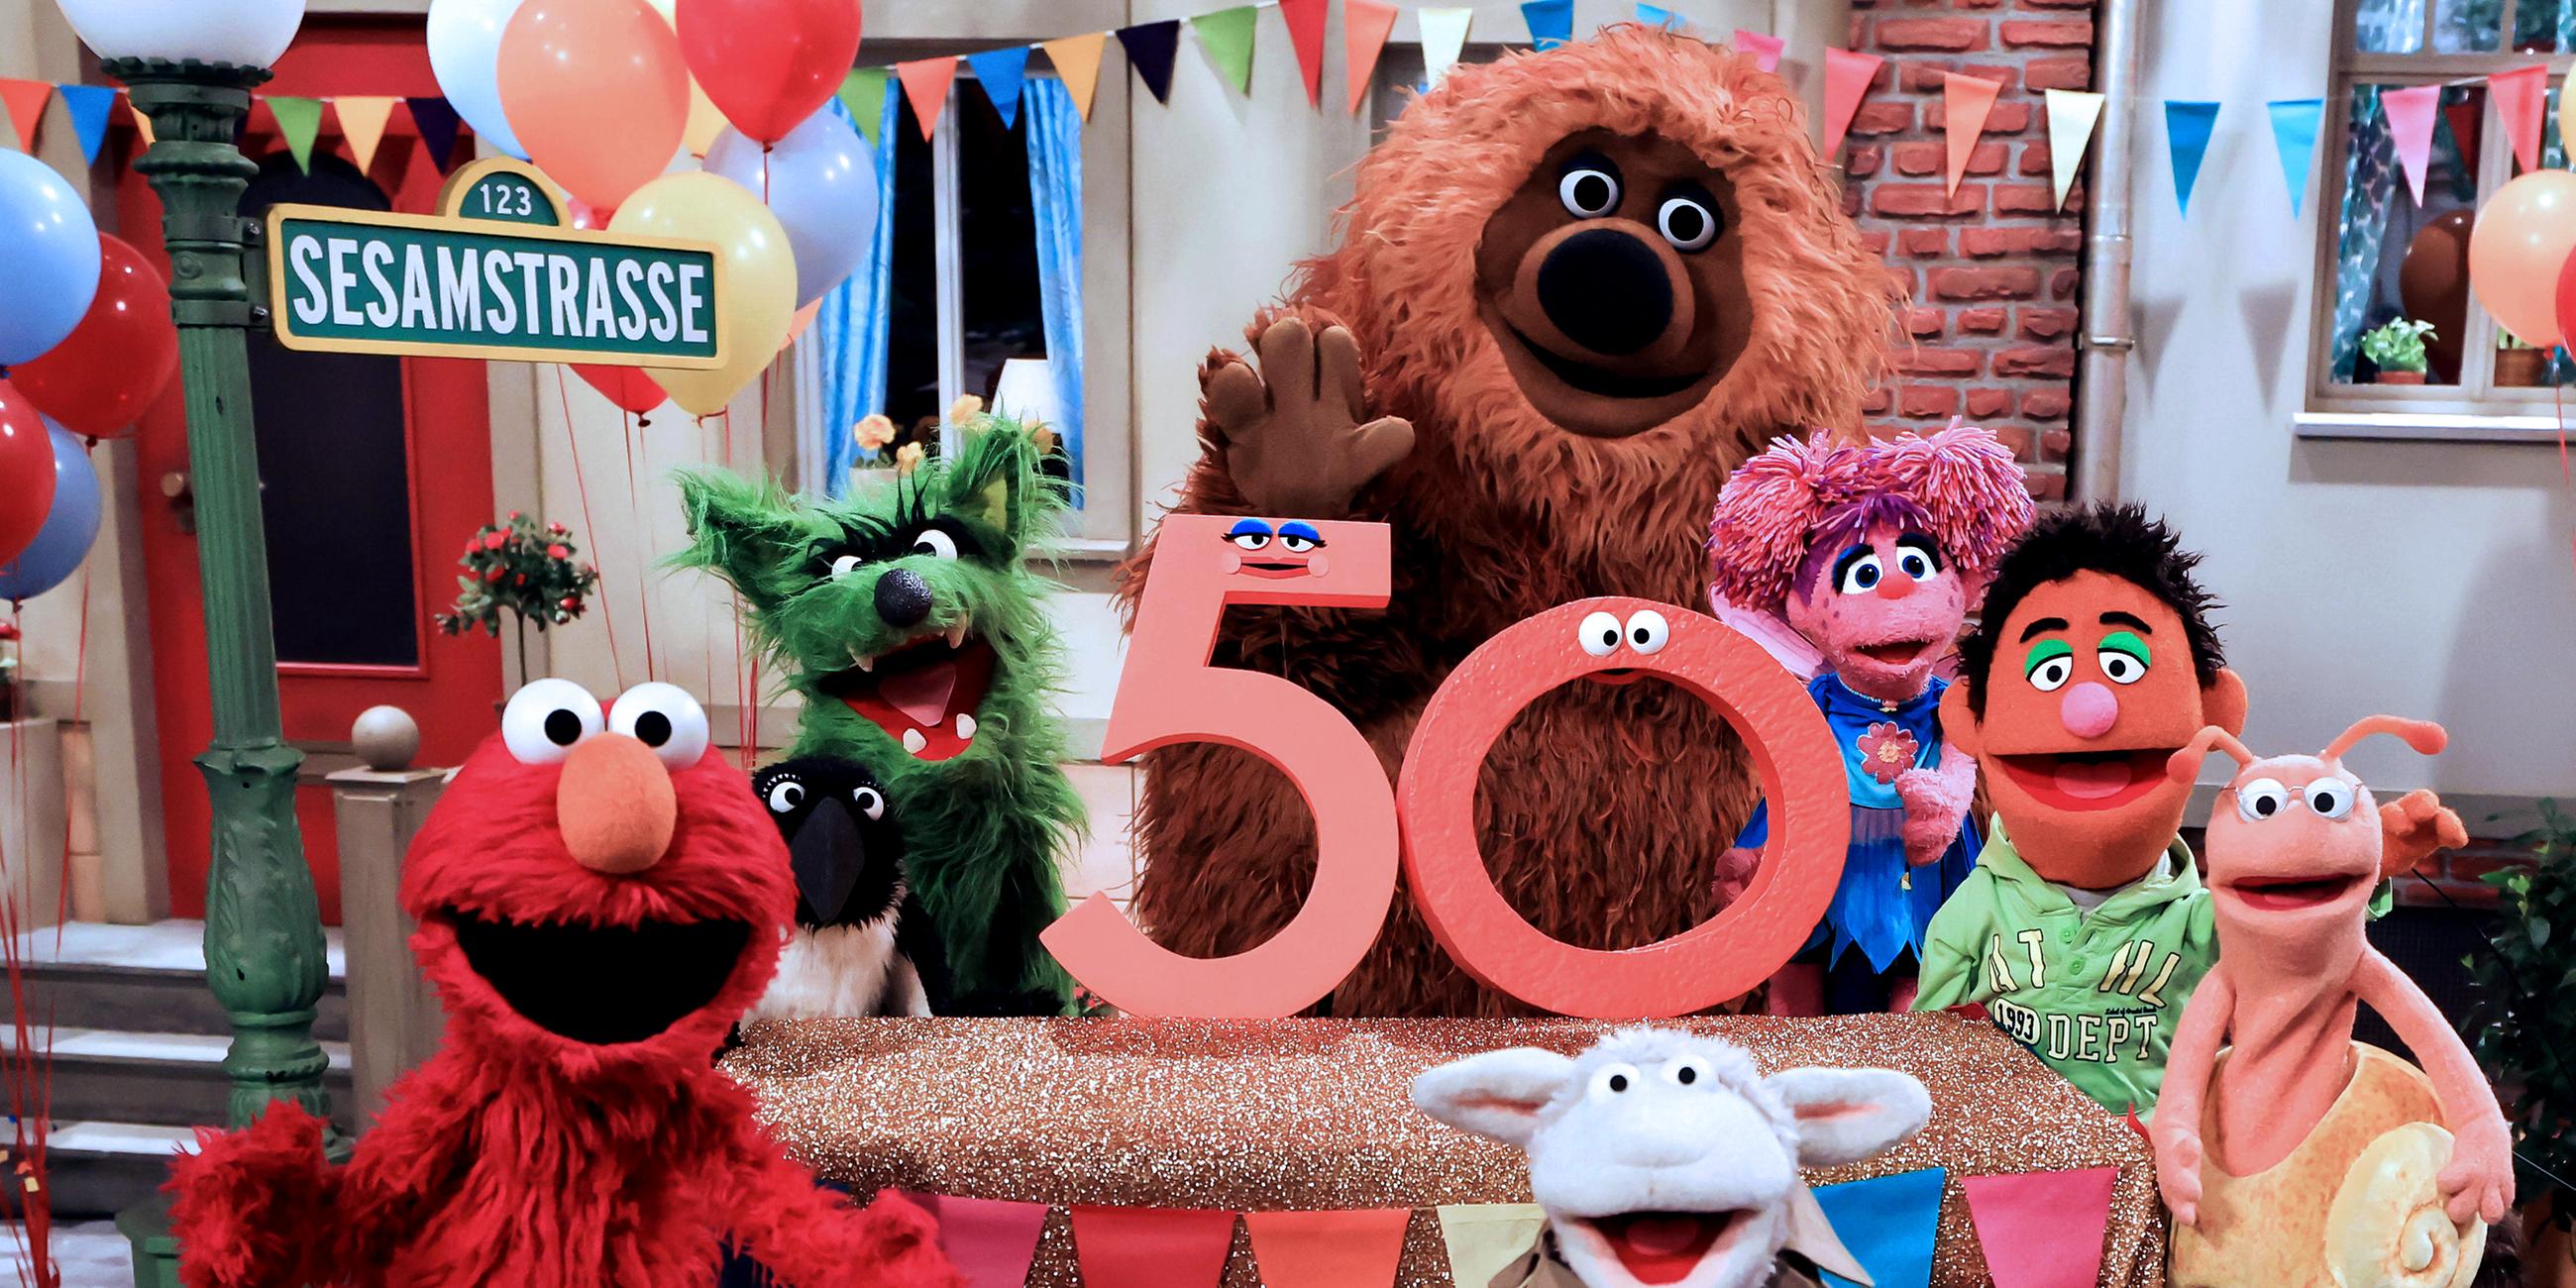 Figuren der Sesamstraße und ihre Puppenspieler bei einem Fototermin zu "50 Jahre Sesamstraße"